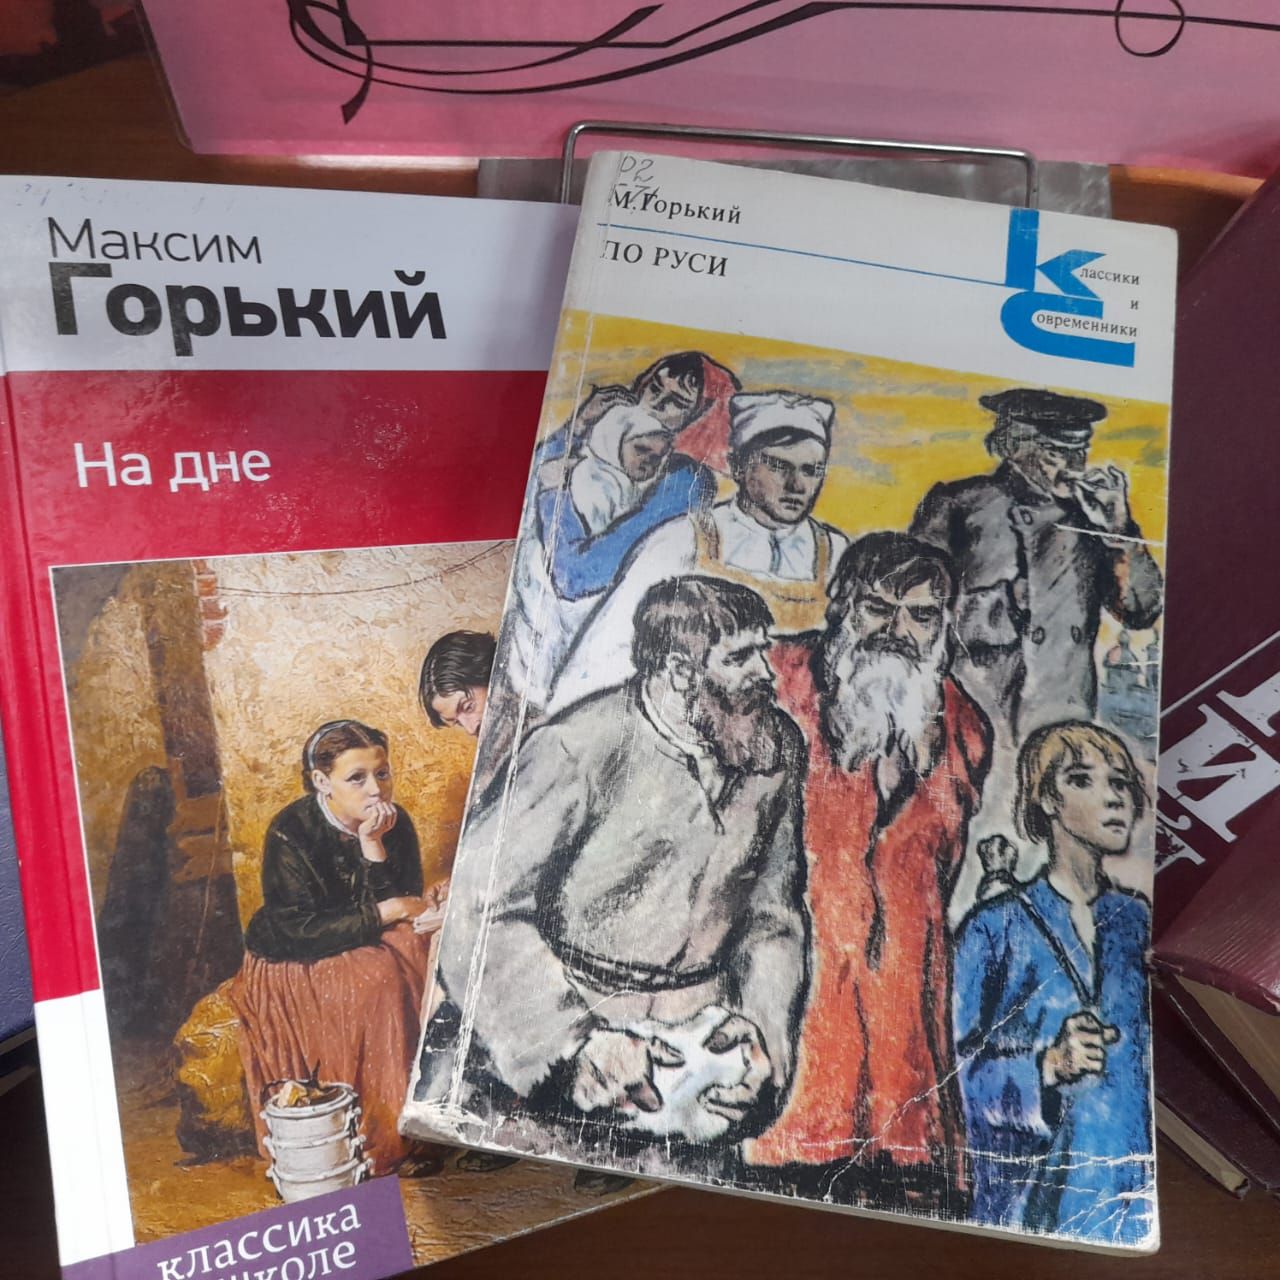 В Лаишевской библиотеке новая выставка: «Максим Горький: жизнь и творчество»